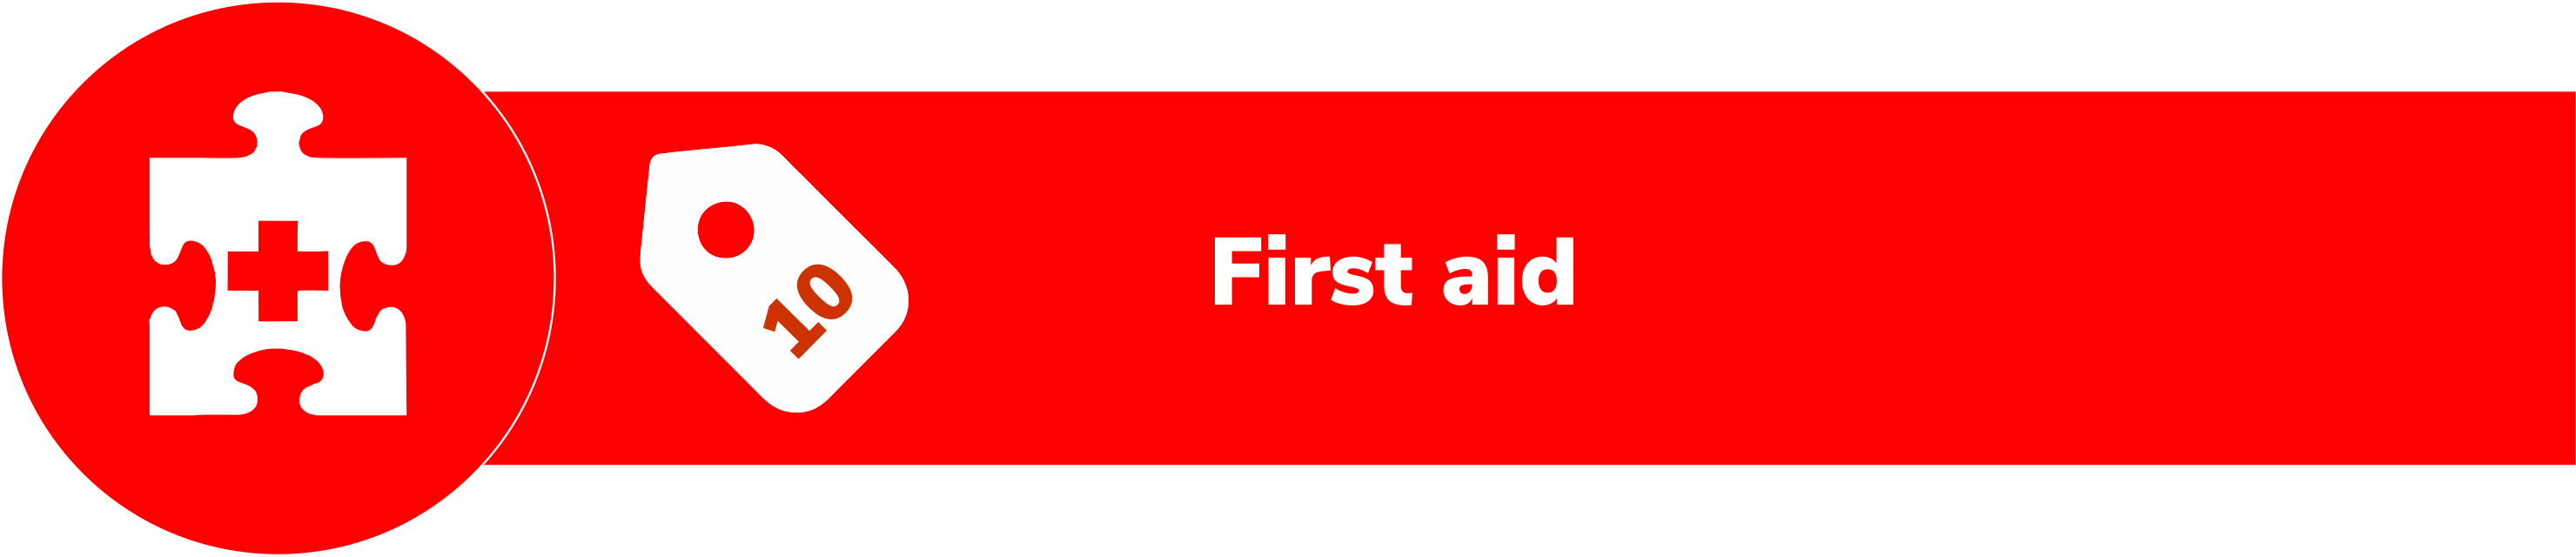 Module 10: First aid